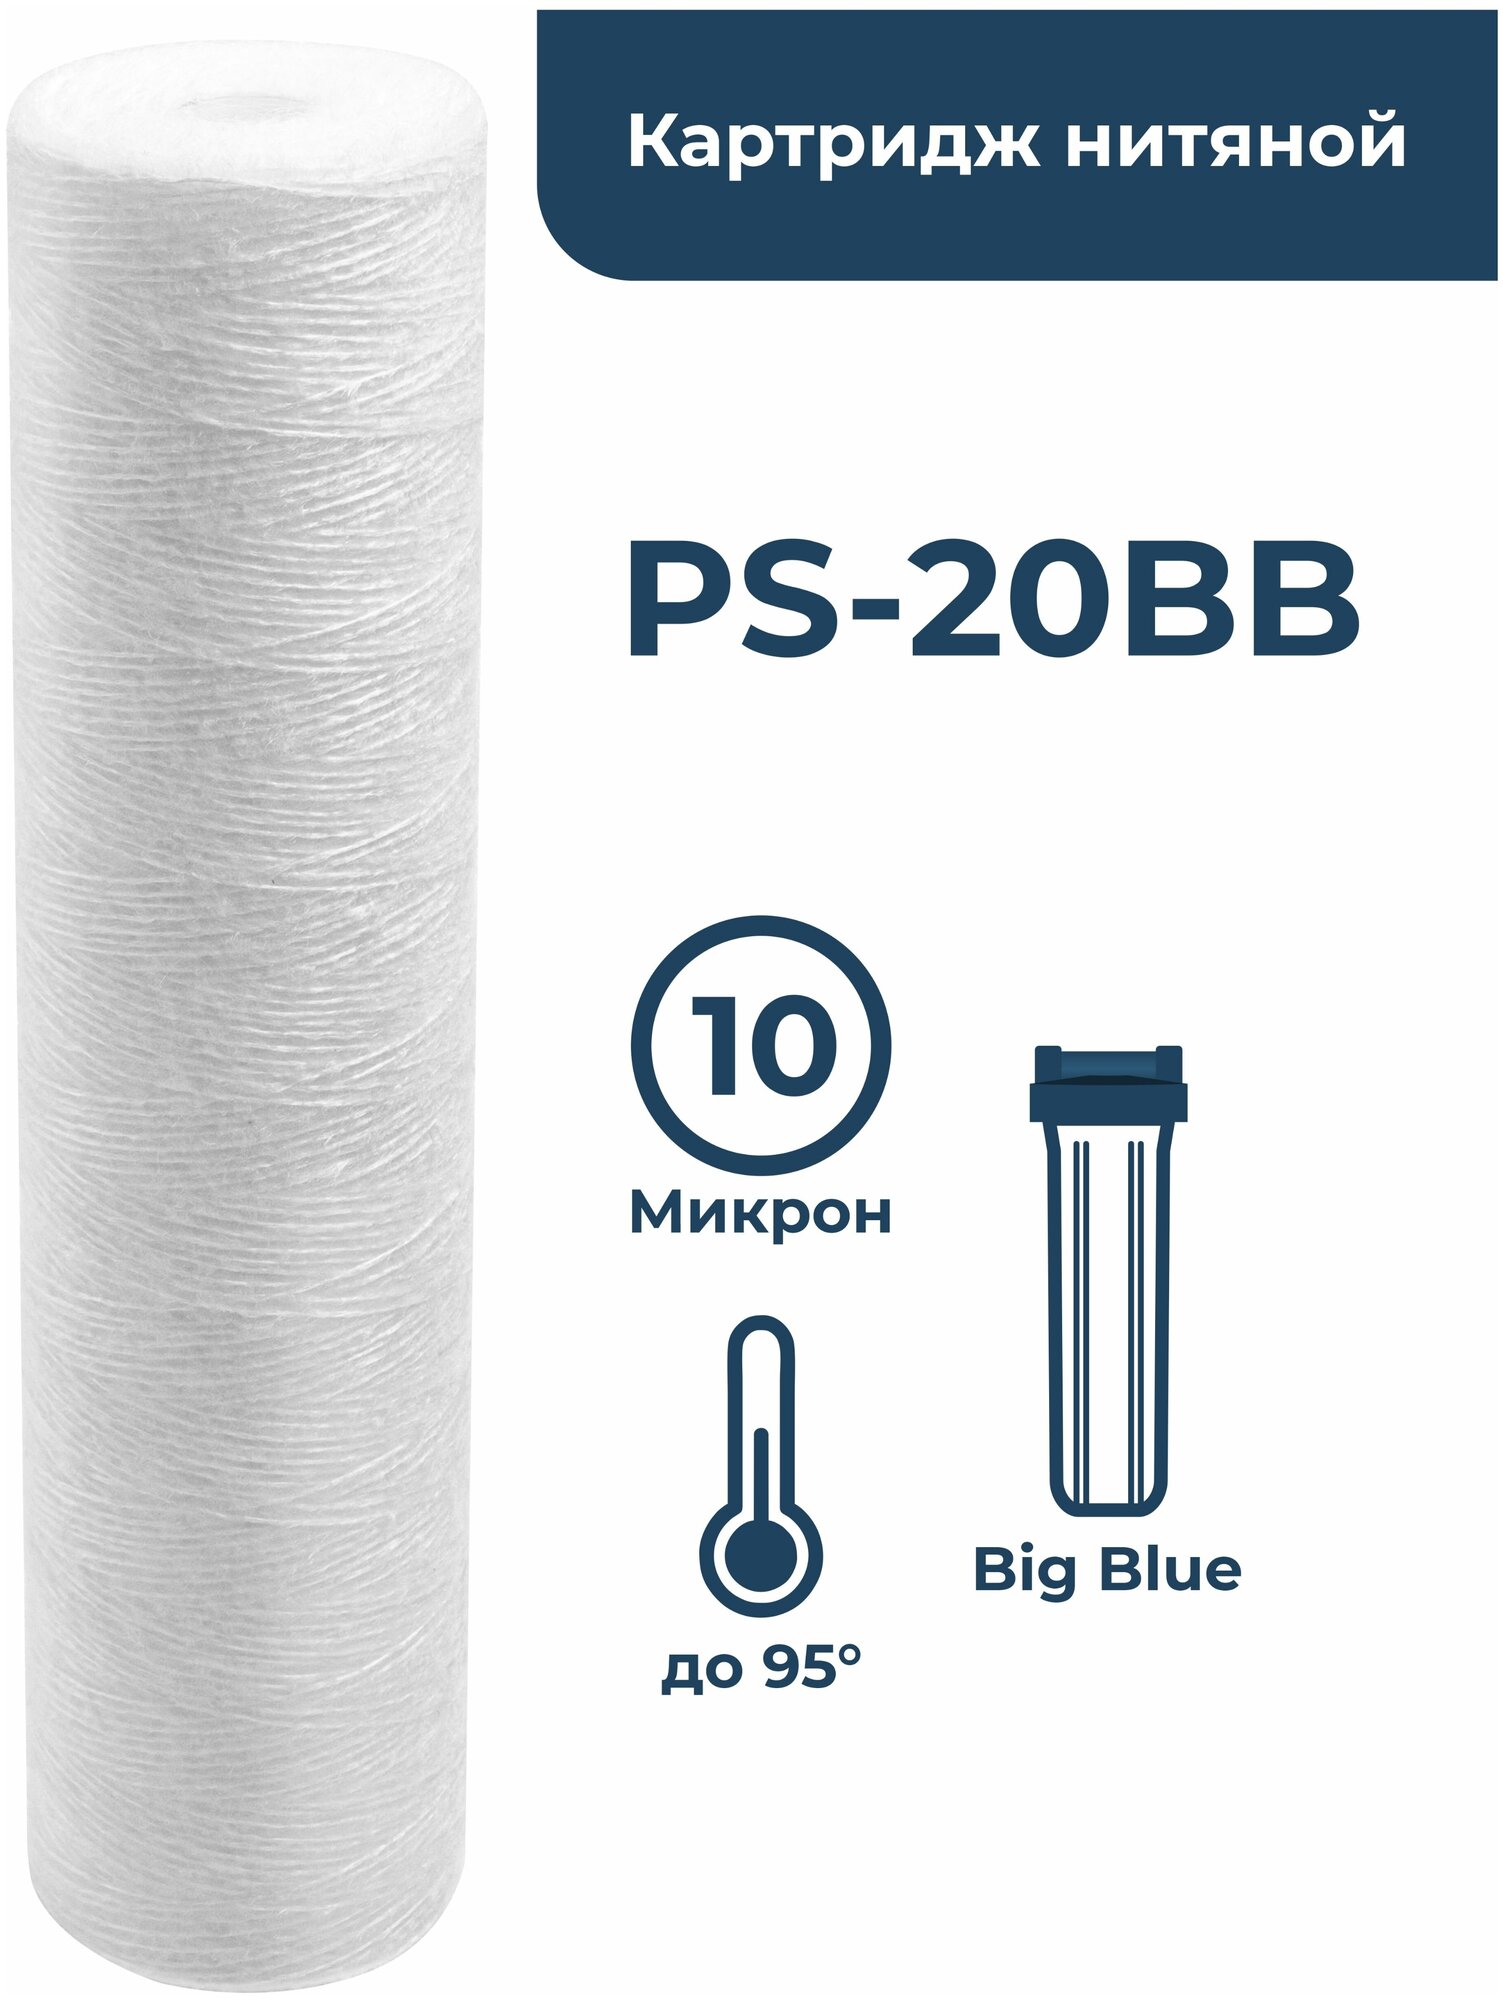 Картридж для фильтра из полипропиленовой нити PS-20BB 10 мкм для механической очистки холодной и горячей воды